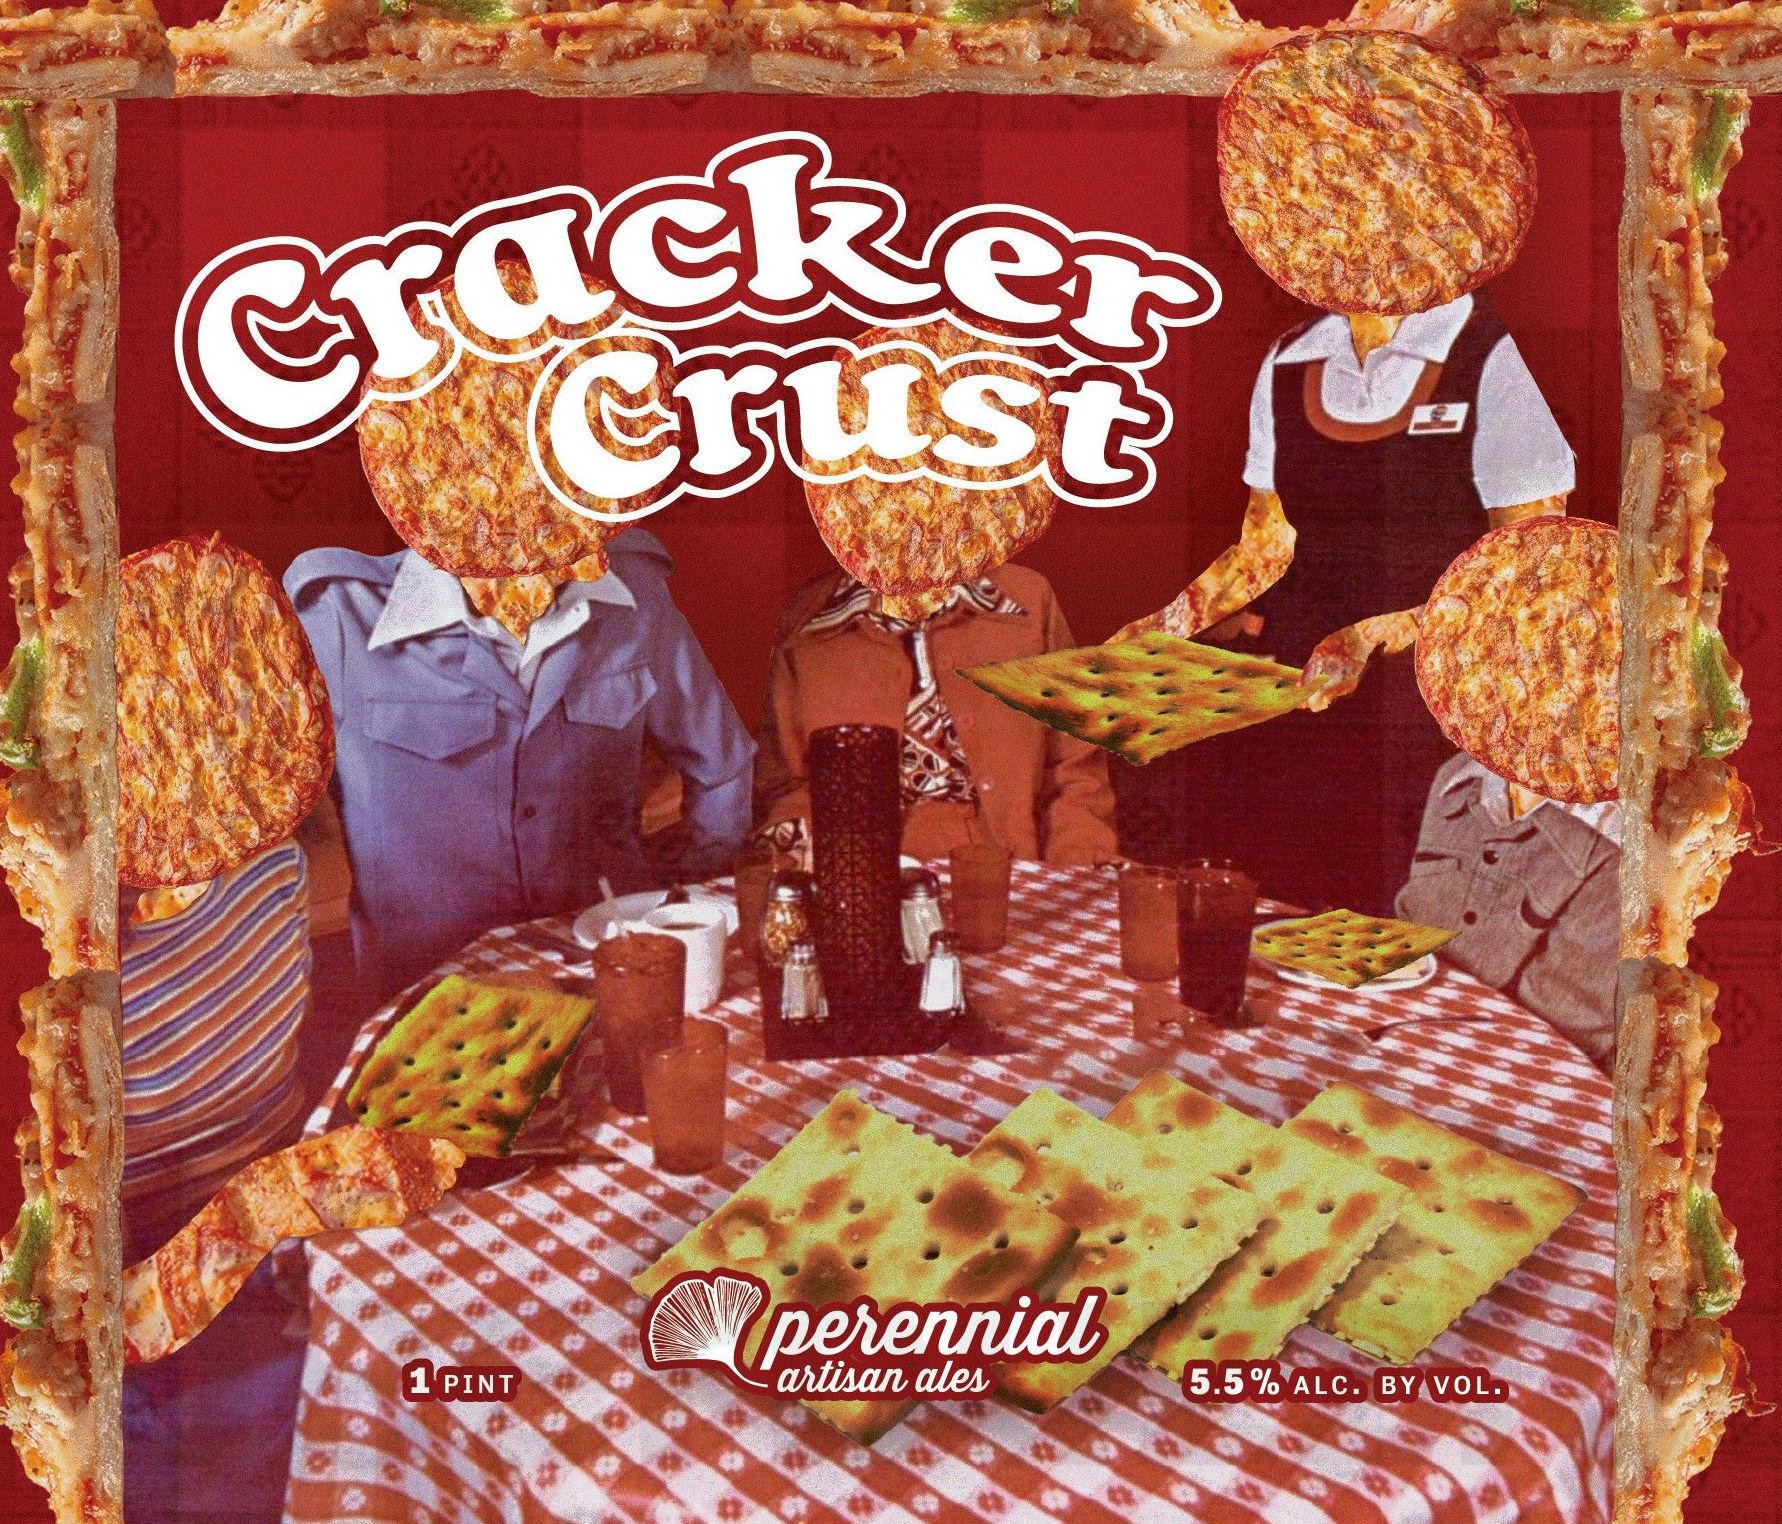 08 - Perennial x Hop Butcher Cracker Crust